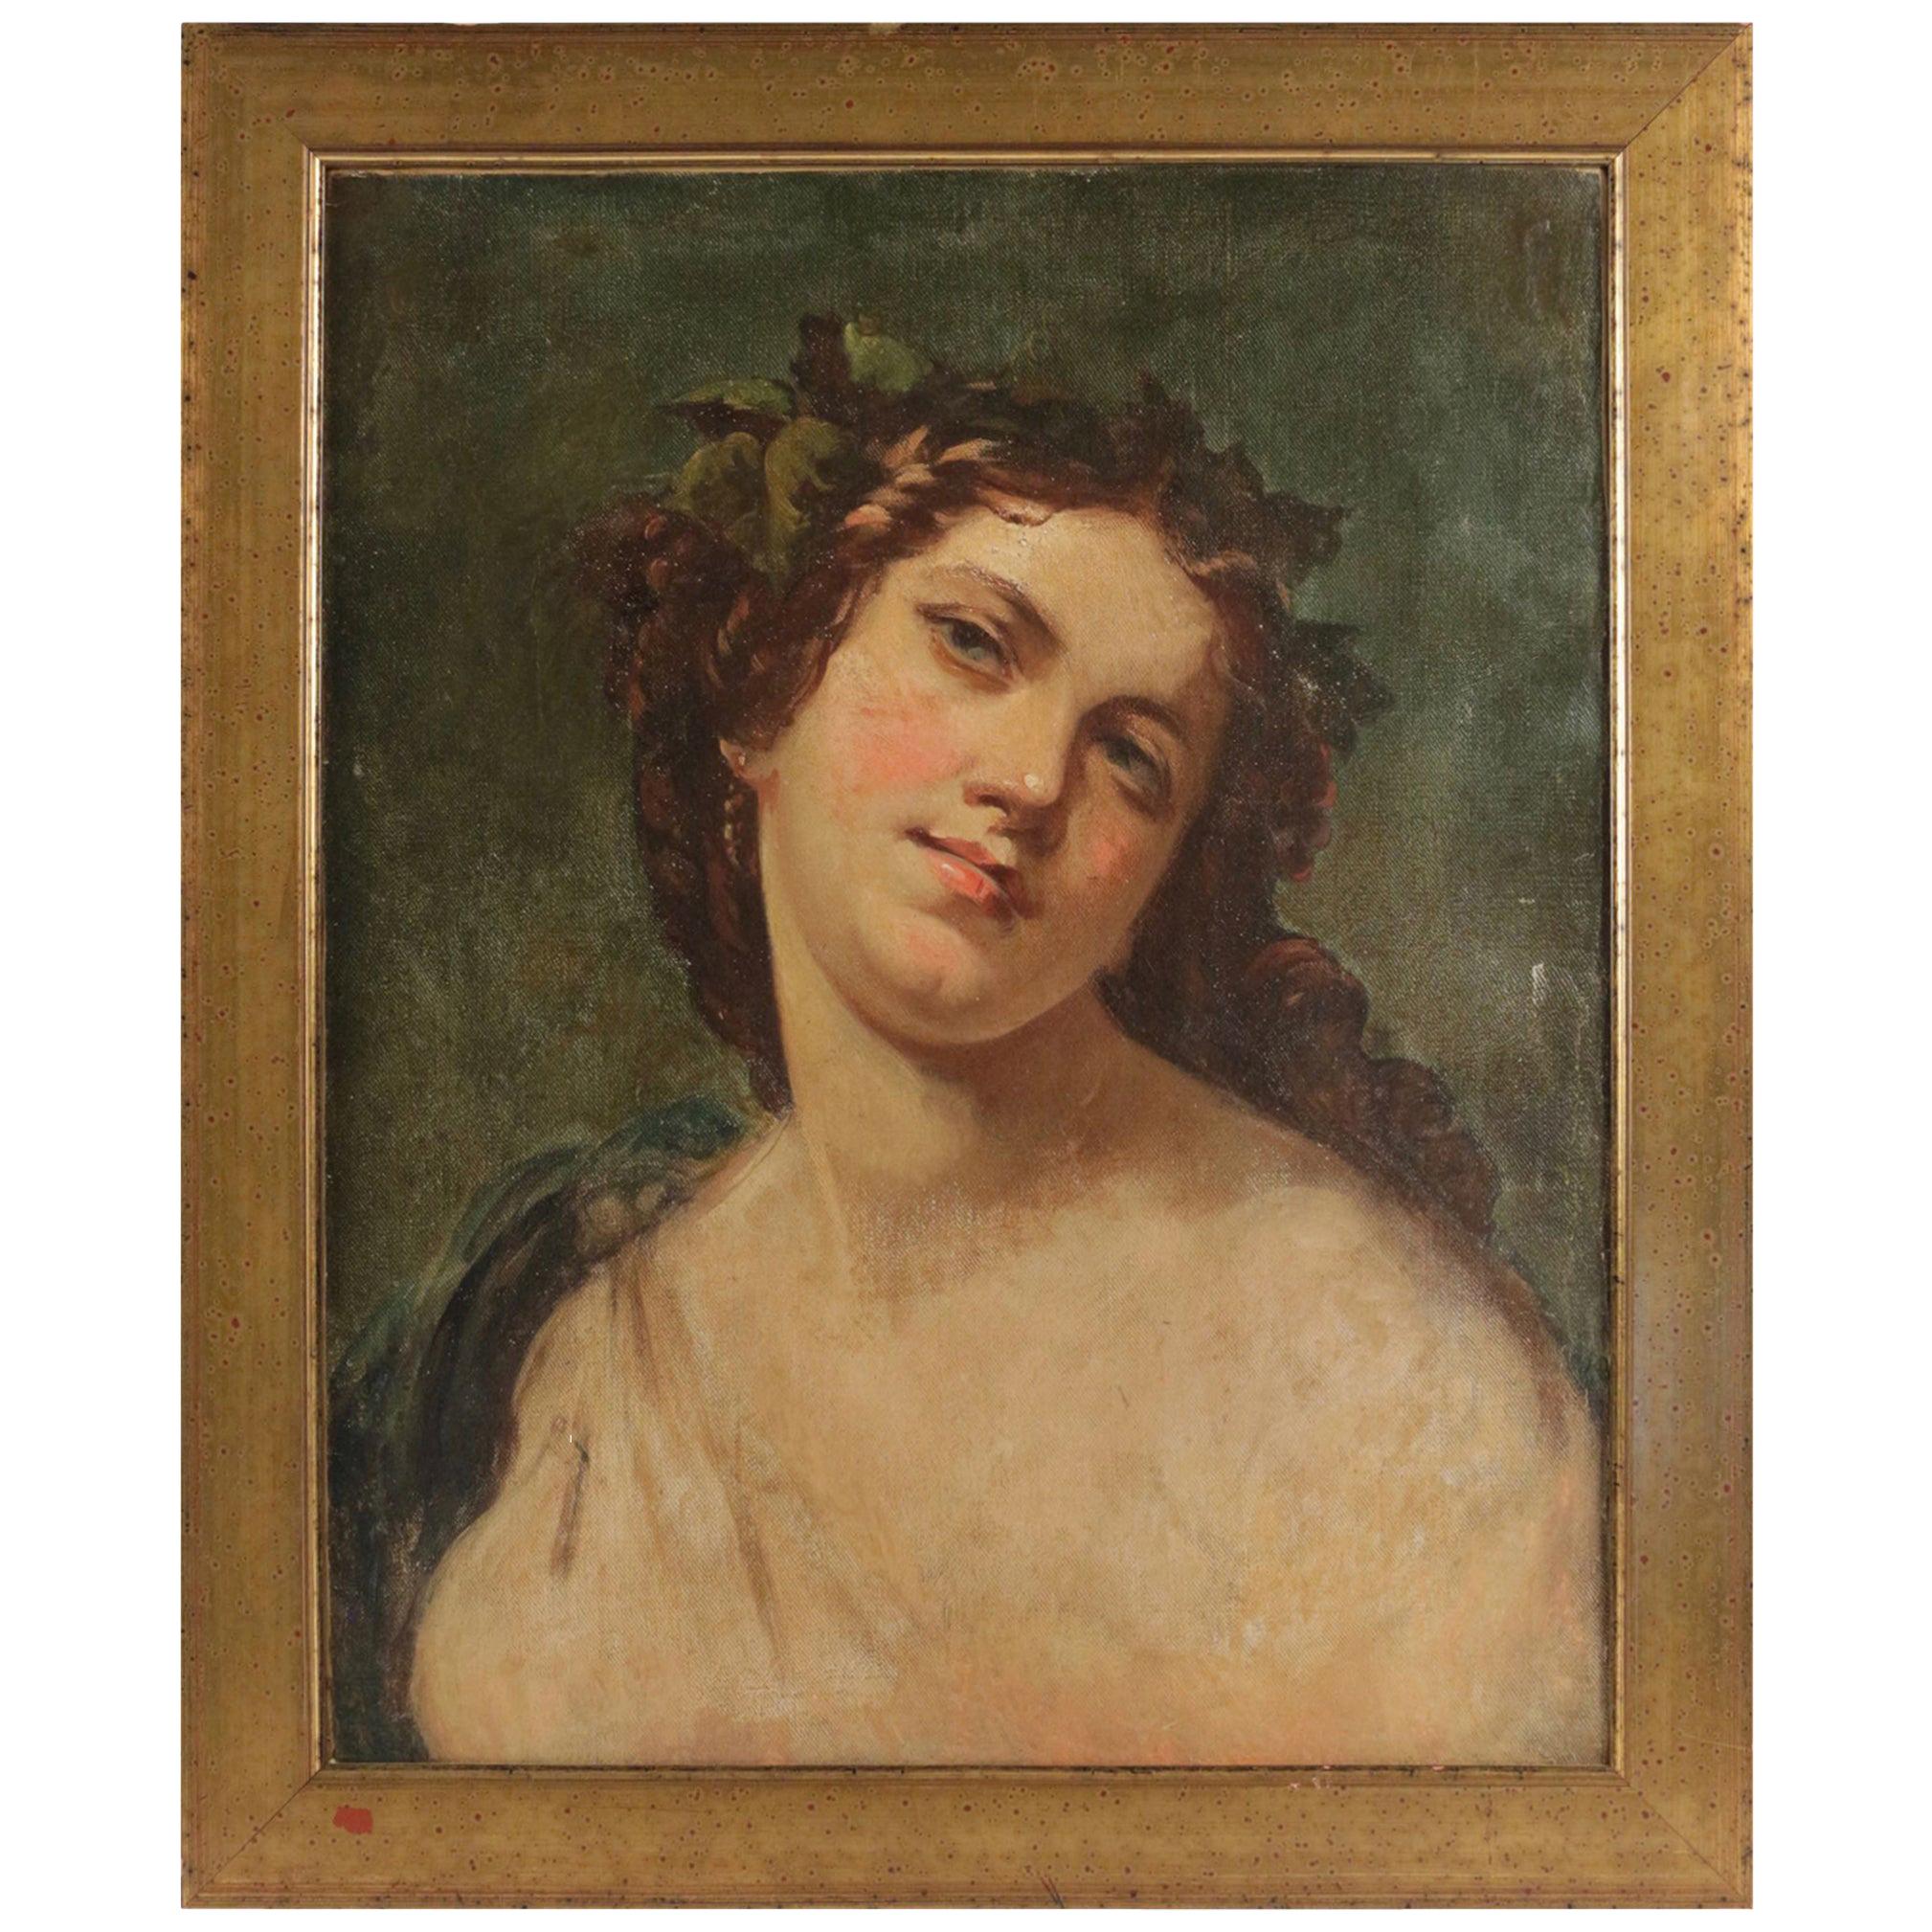 Portrait élégant du 19ème siècle représentant un poème romantique d'une femme